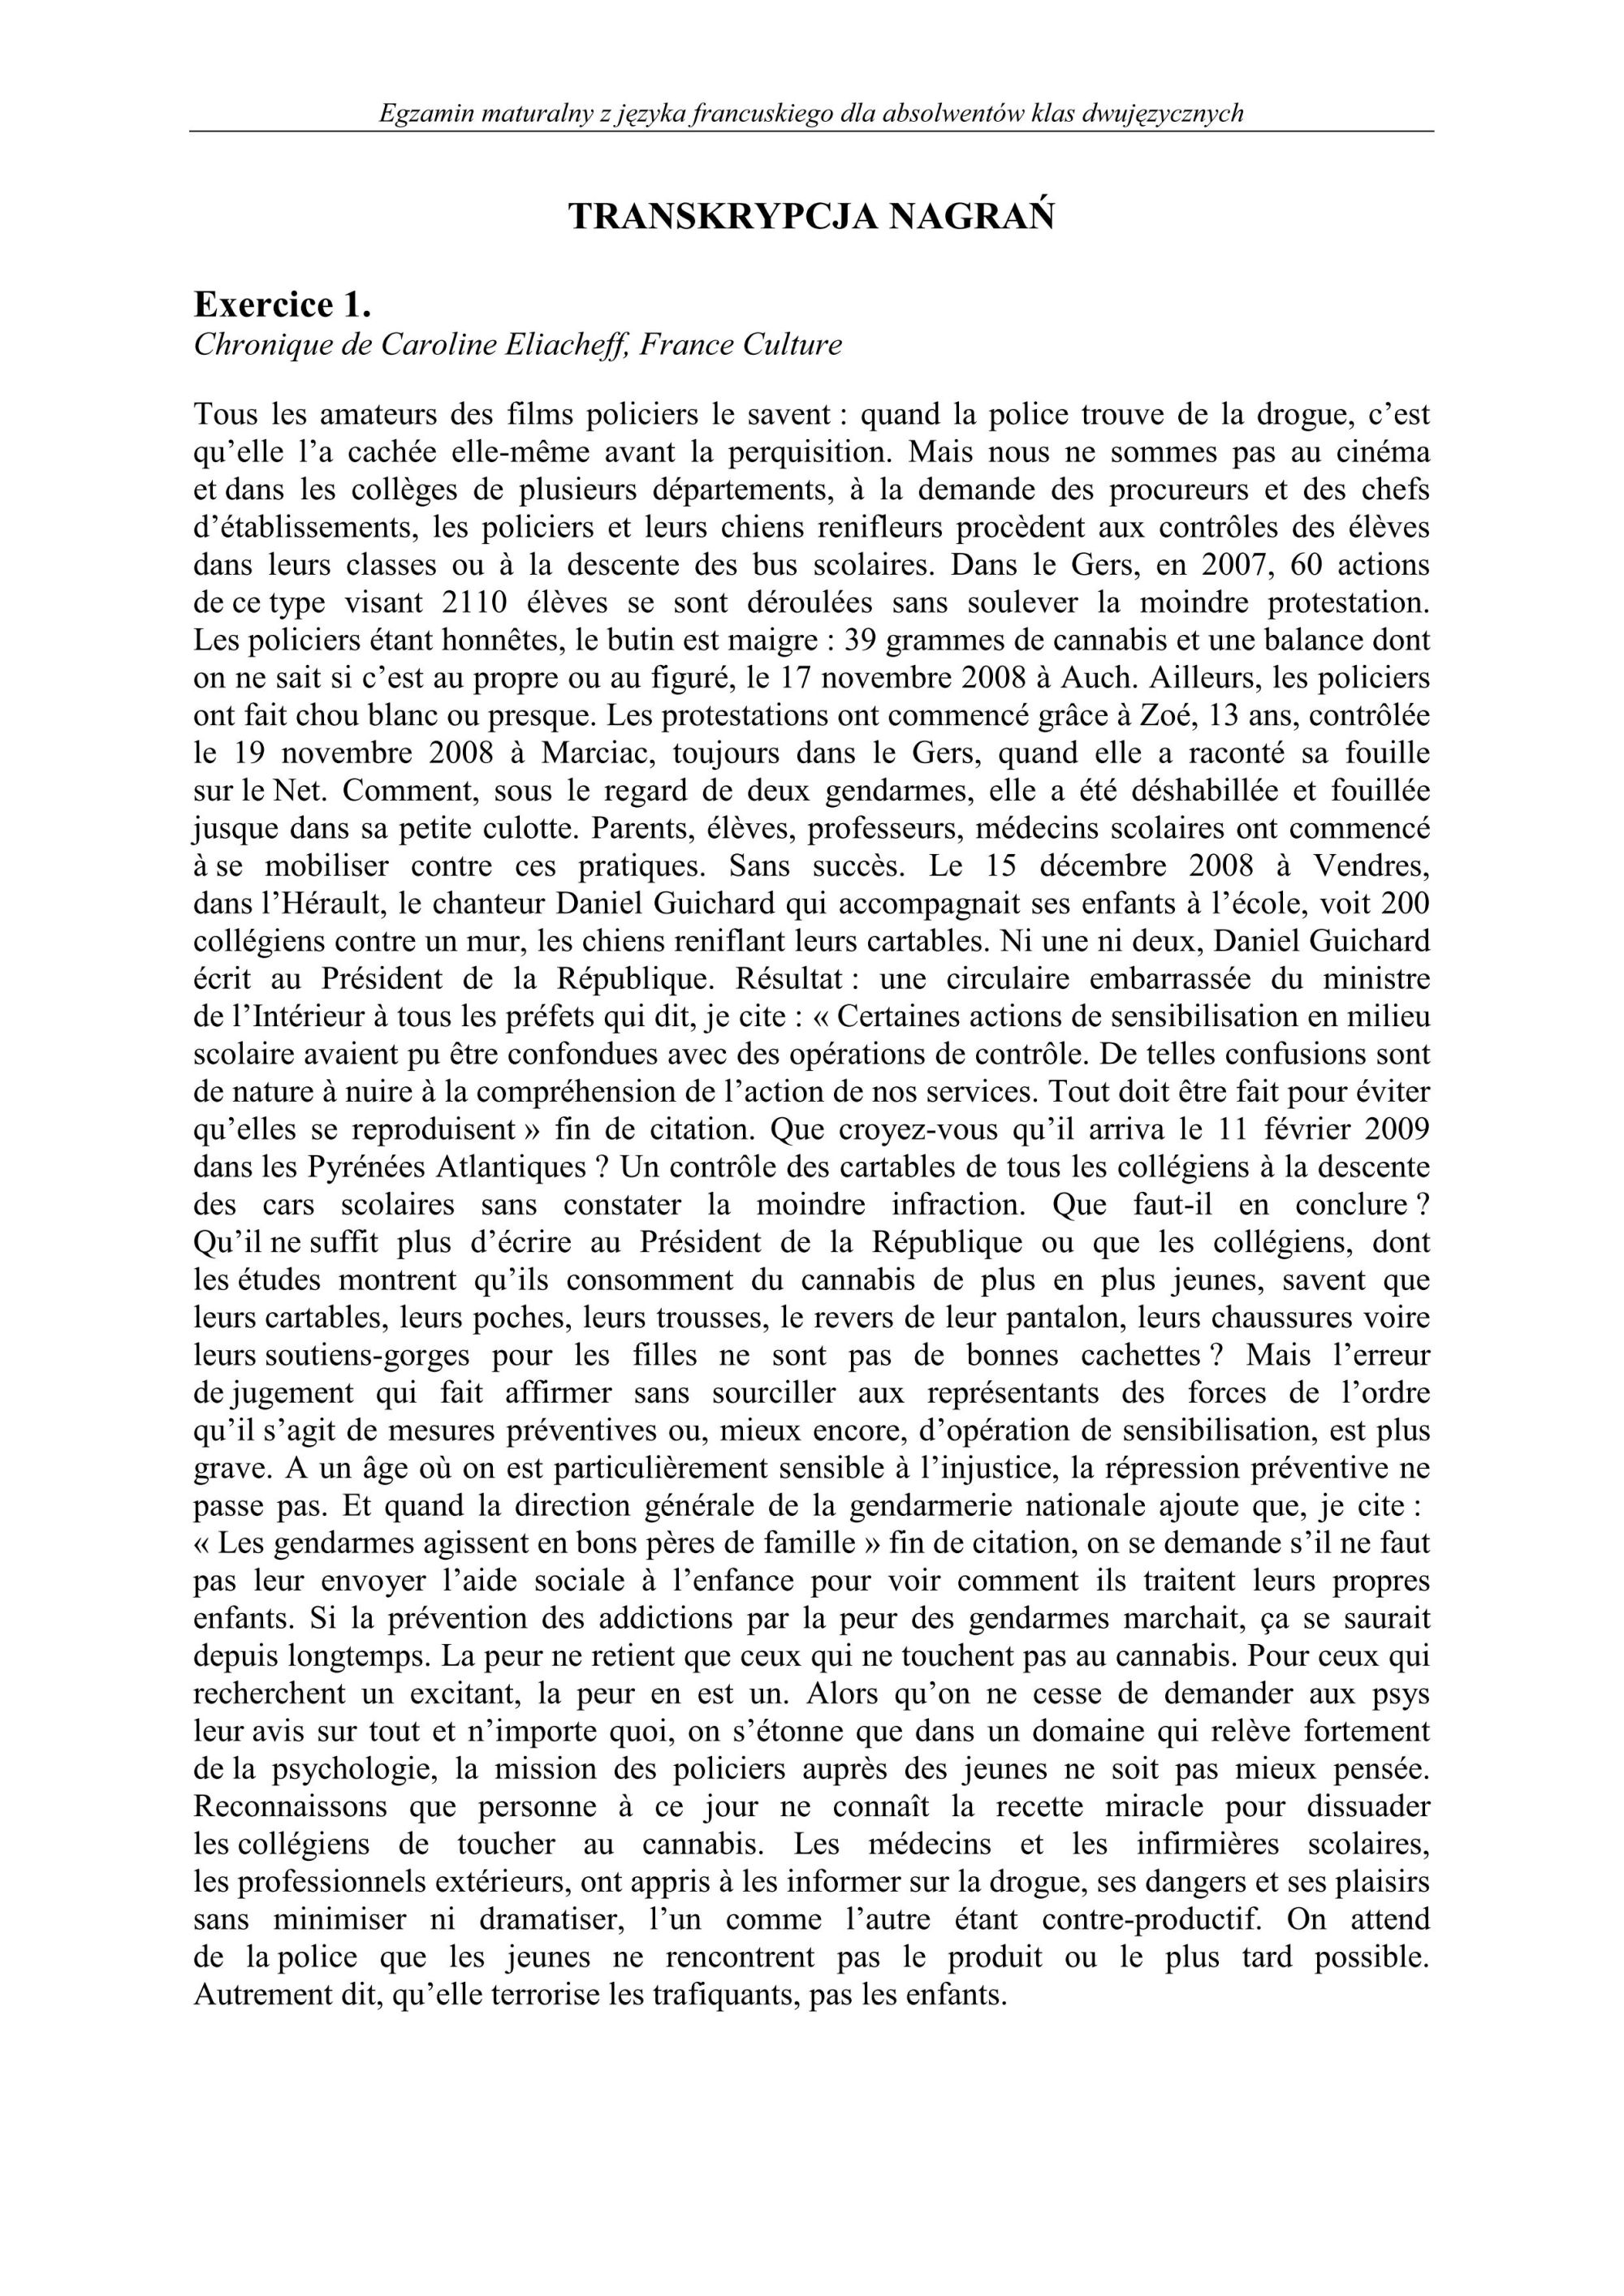 transkrypcja-jezyk-francuski-dla-klas-dwujezycznych-matura-2011 - 1